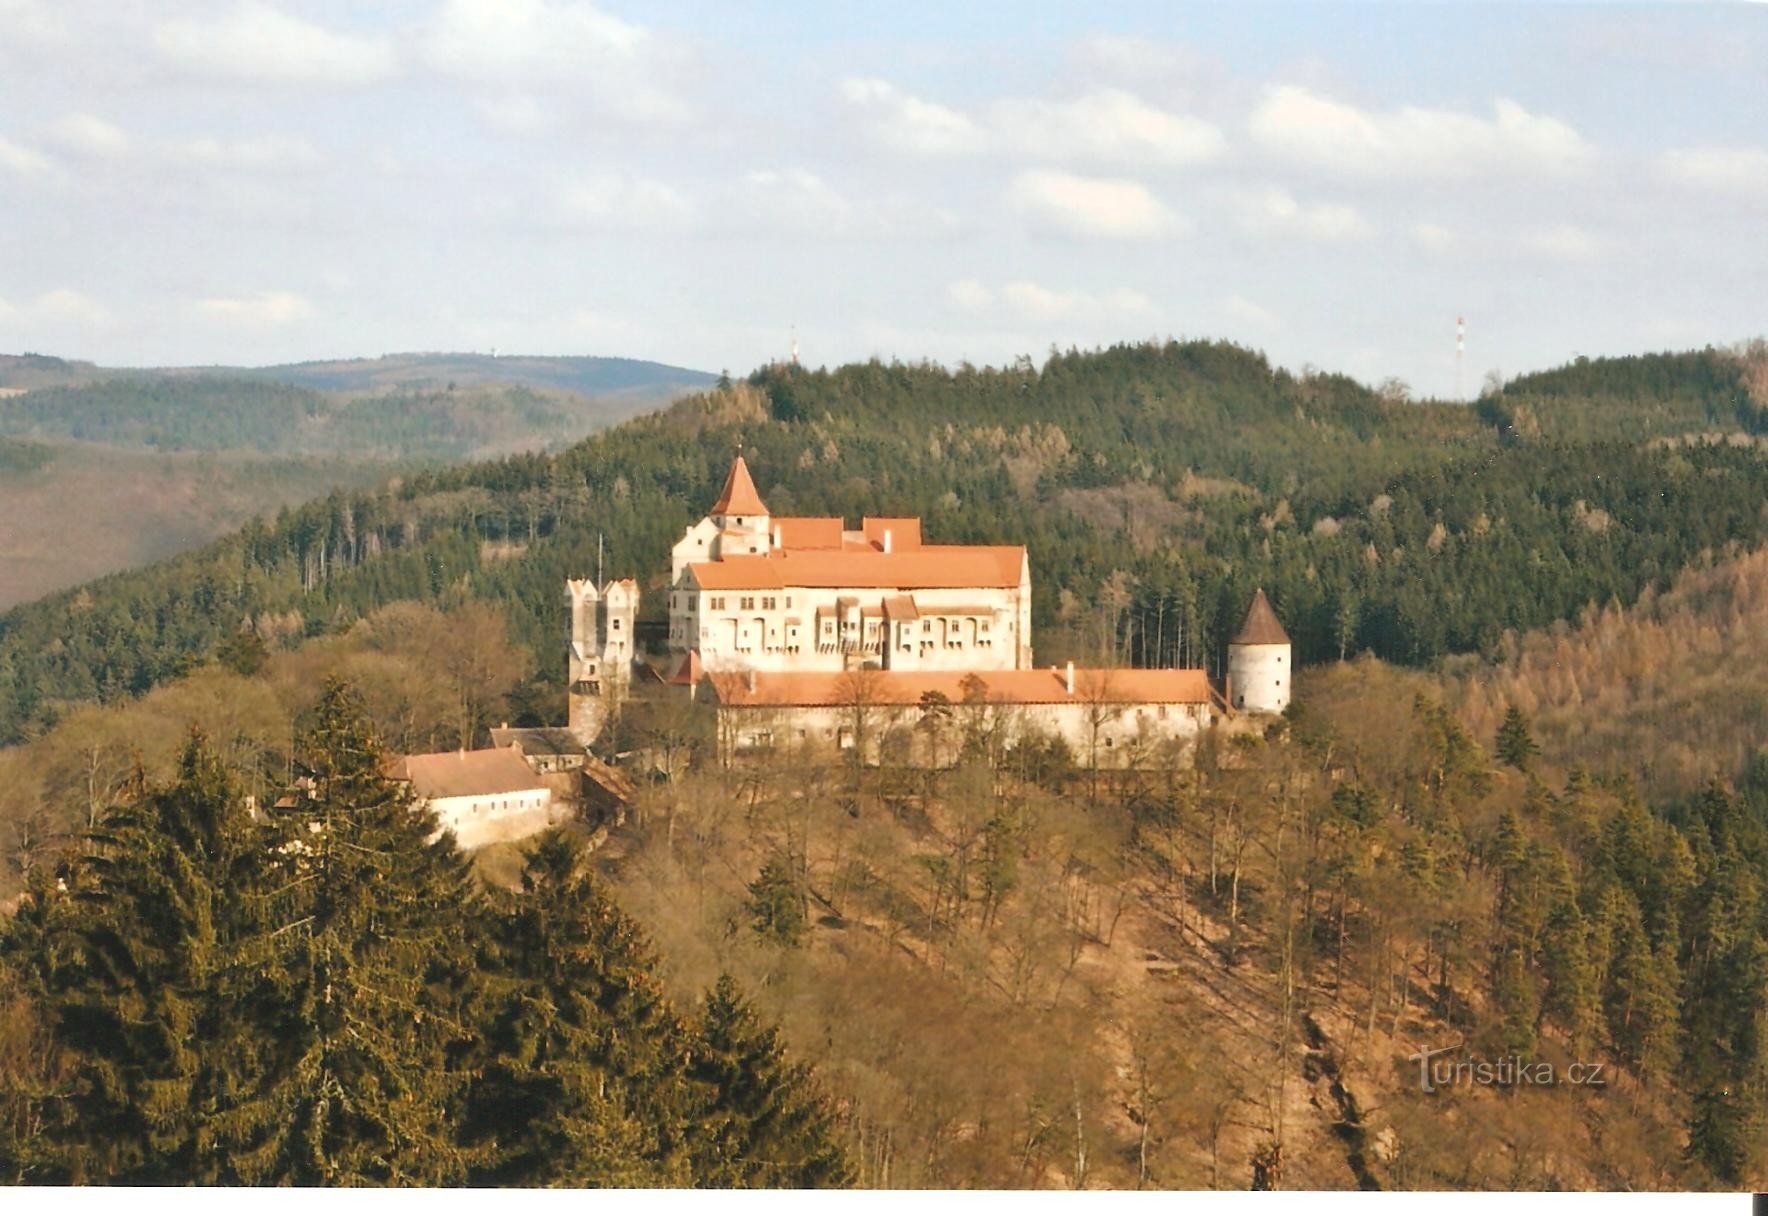 Marenčino loubí - vista do Castelo de Pernštejn no final do outono de 2008